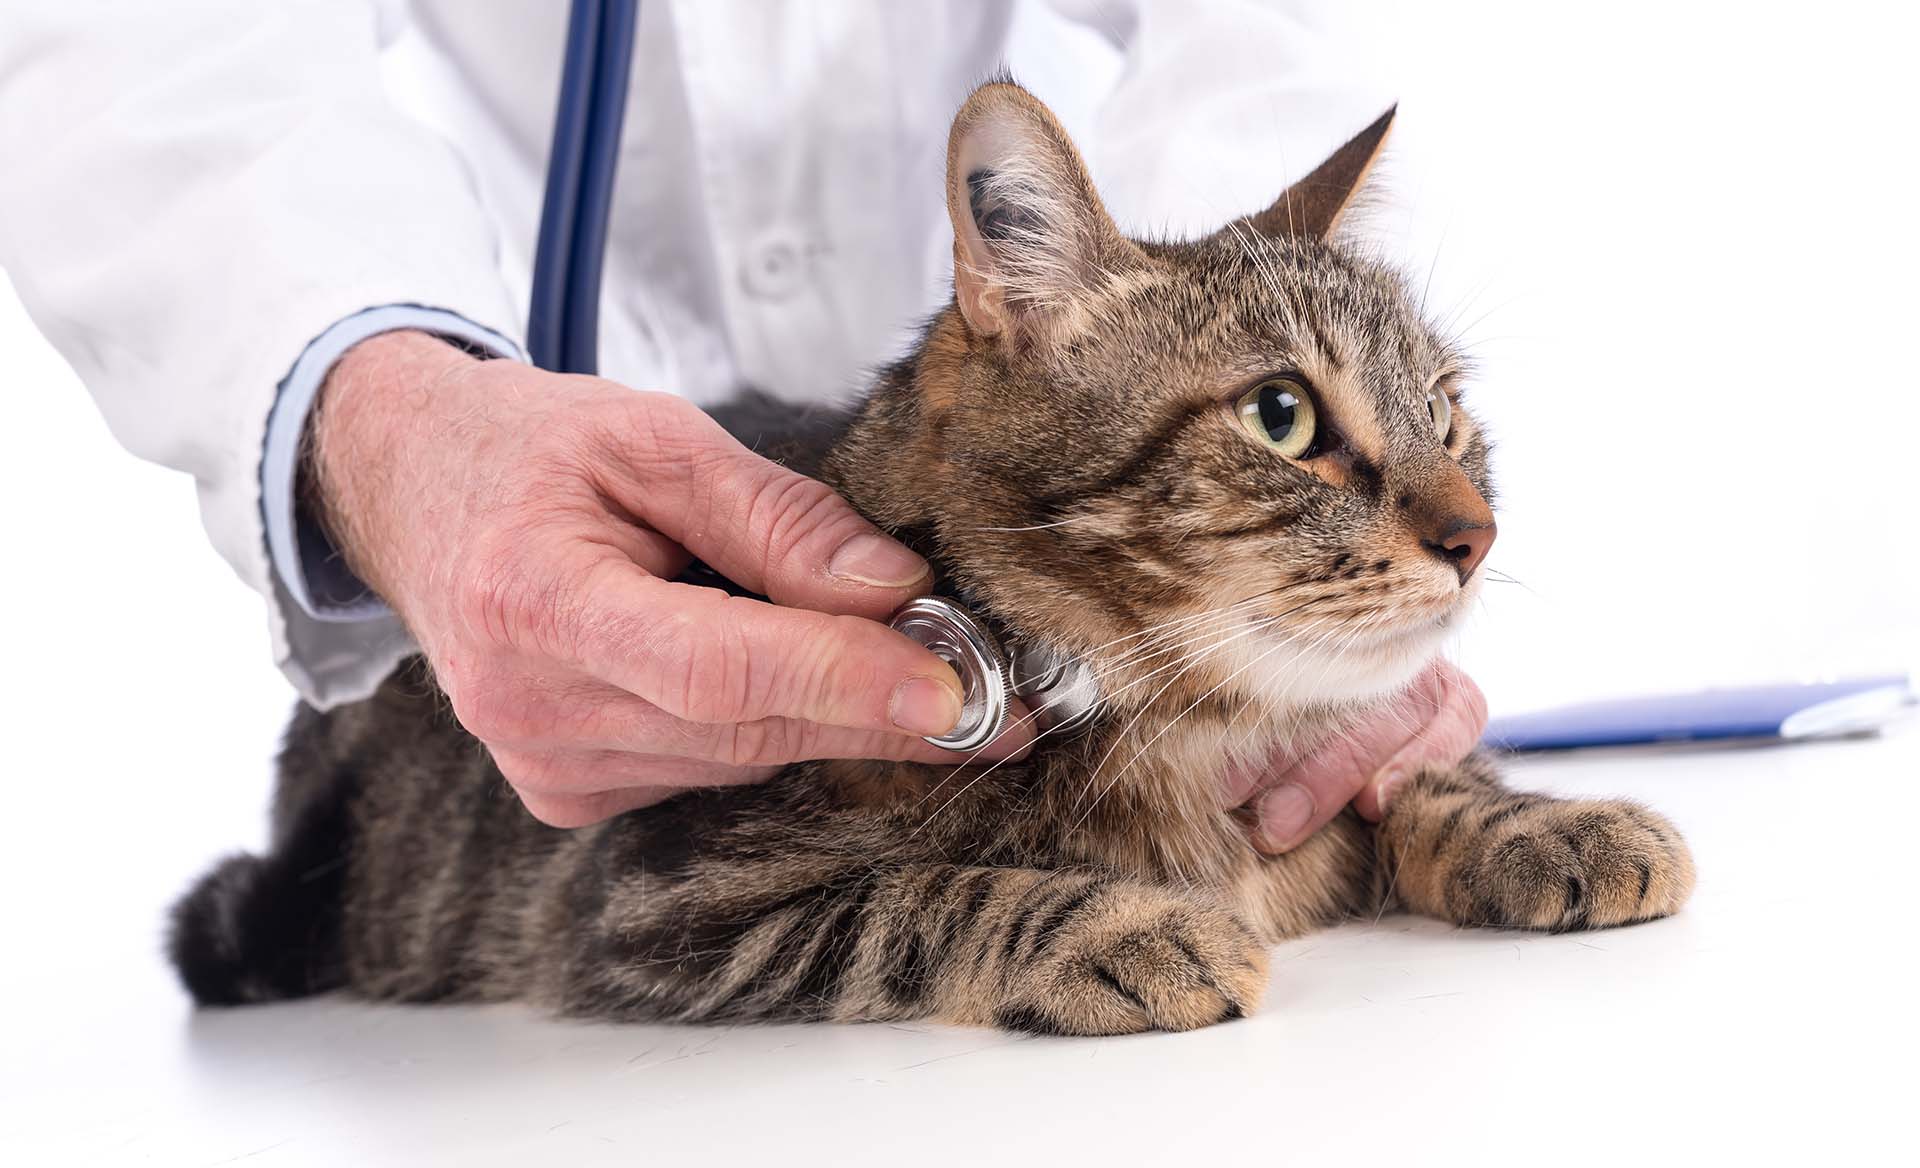 Cat veterinary exam